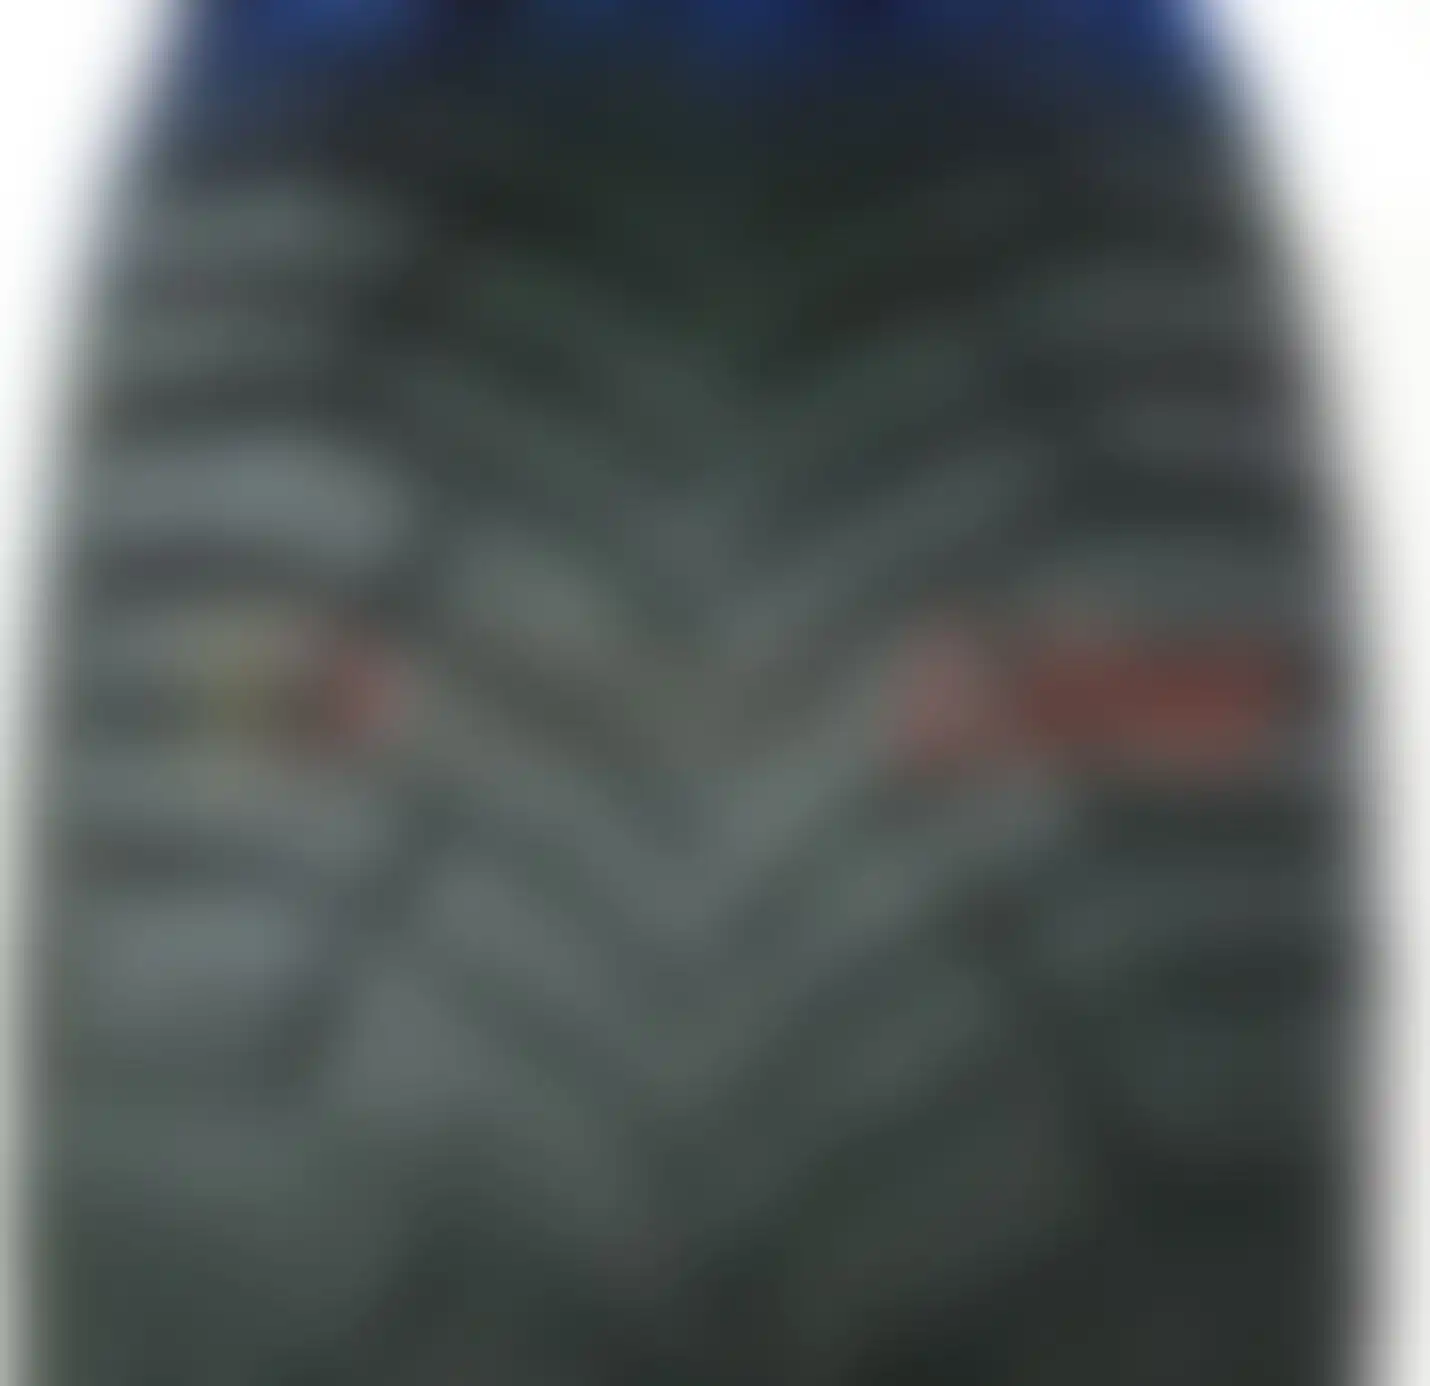 Легковая шина зимняя шипованная Michelin X-Ice North 4 205/65 R16 99T , фото 3